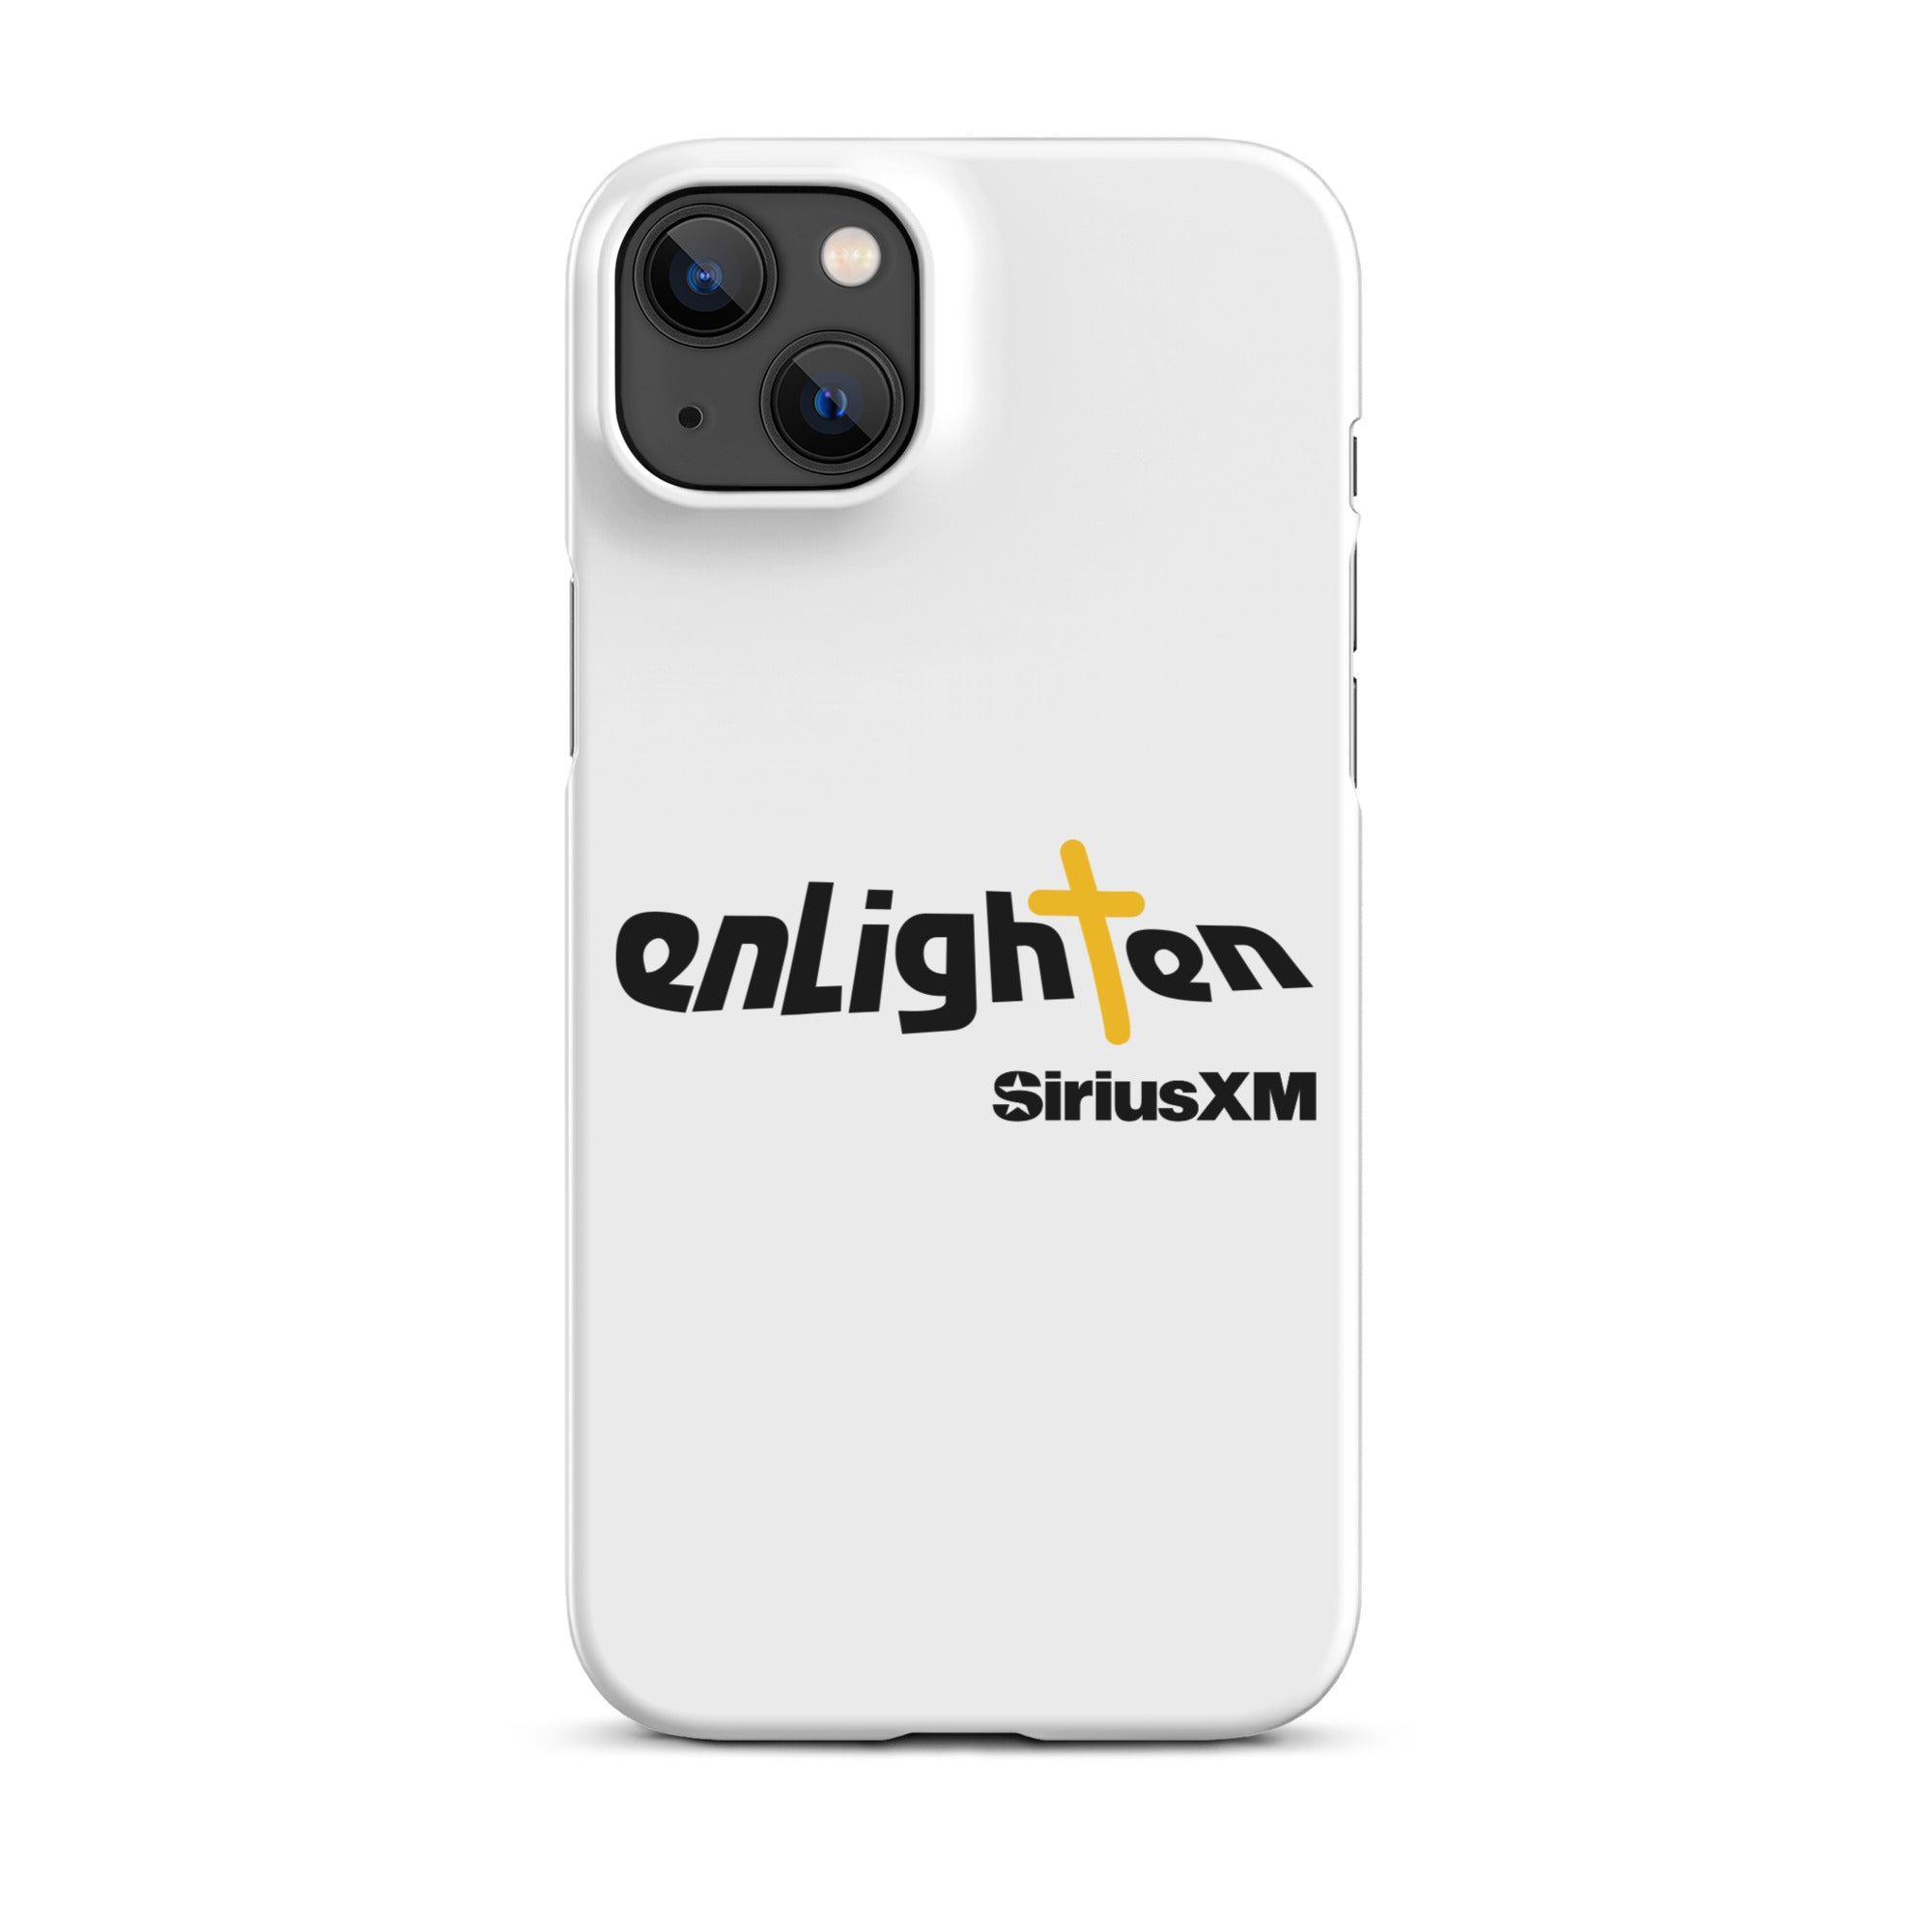 Enlighten: iPhone® Snap Case